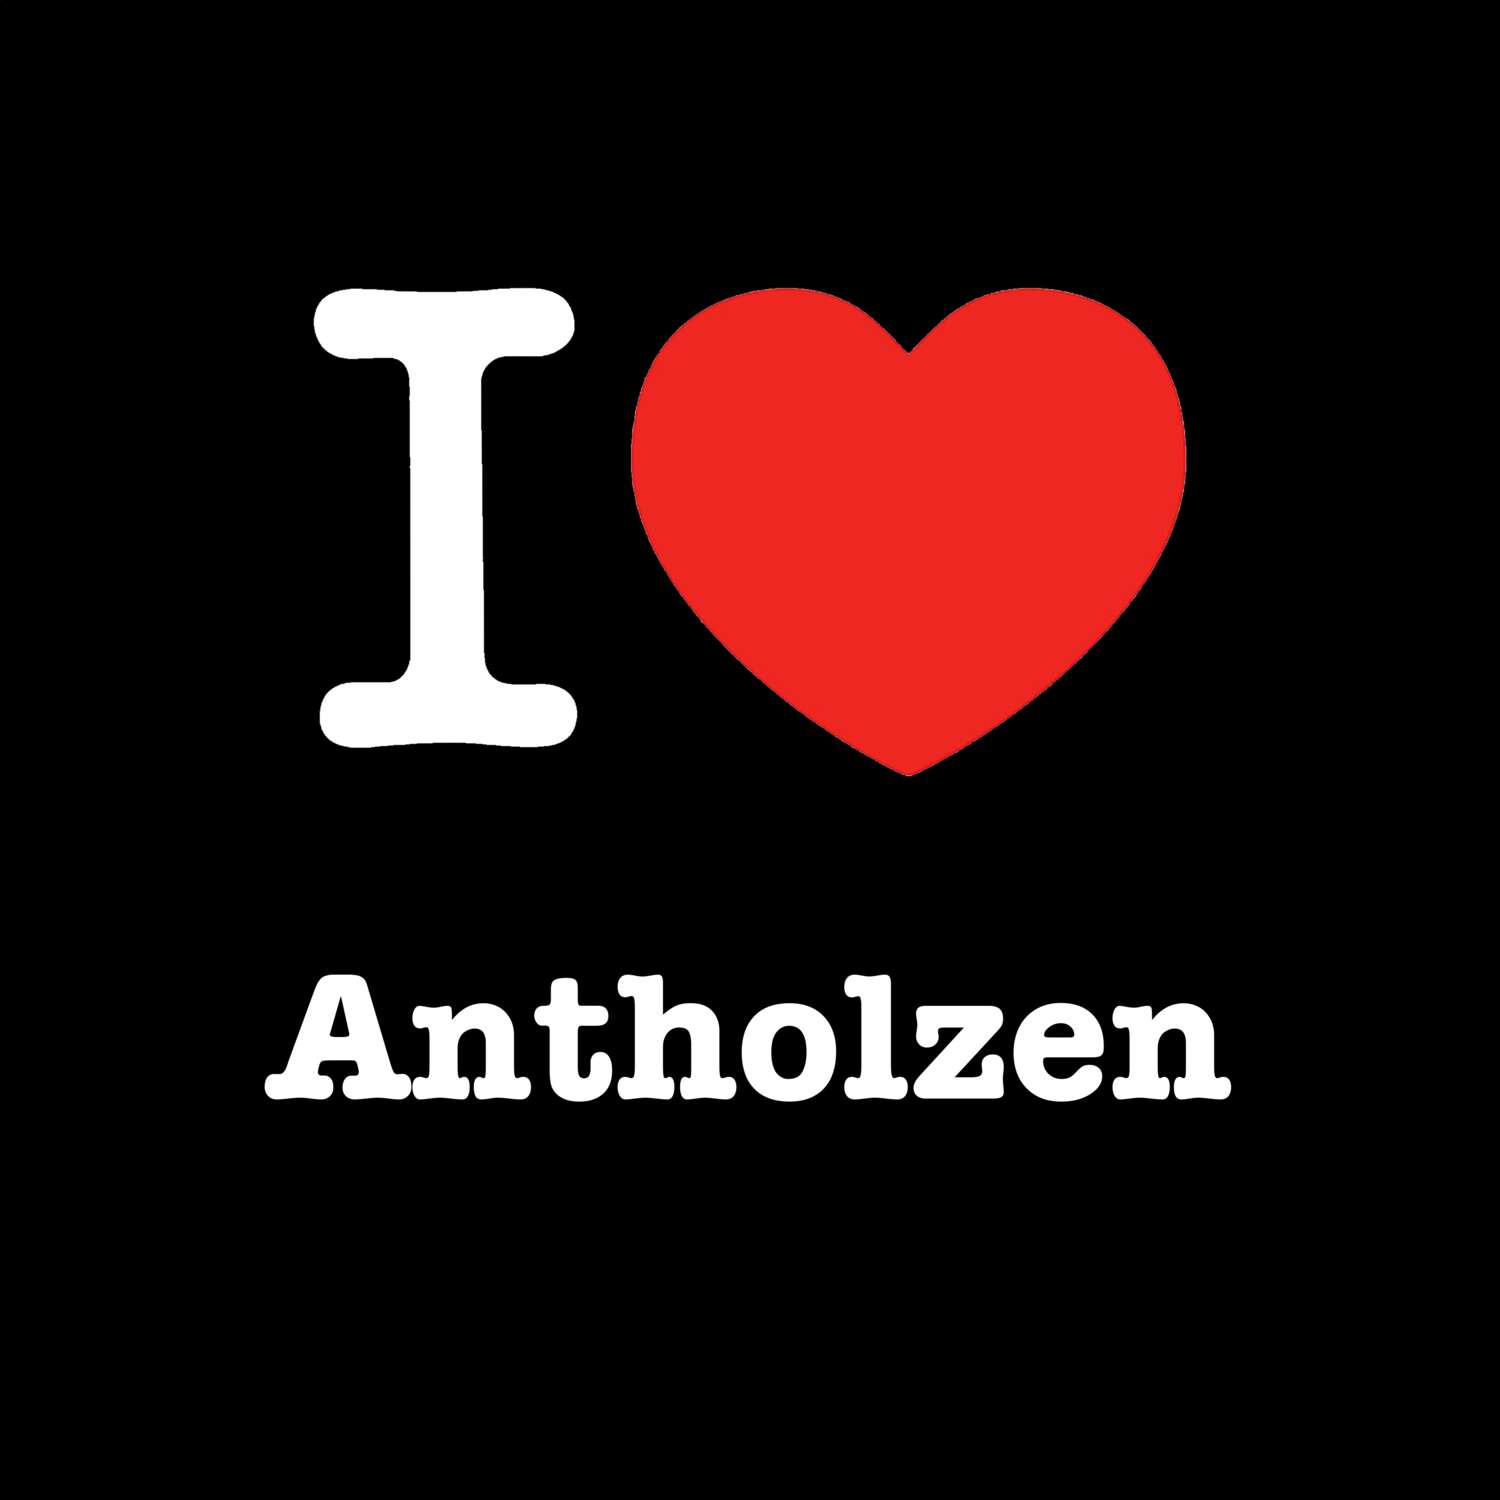 Antholzen T-Shirt »I love«